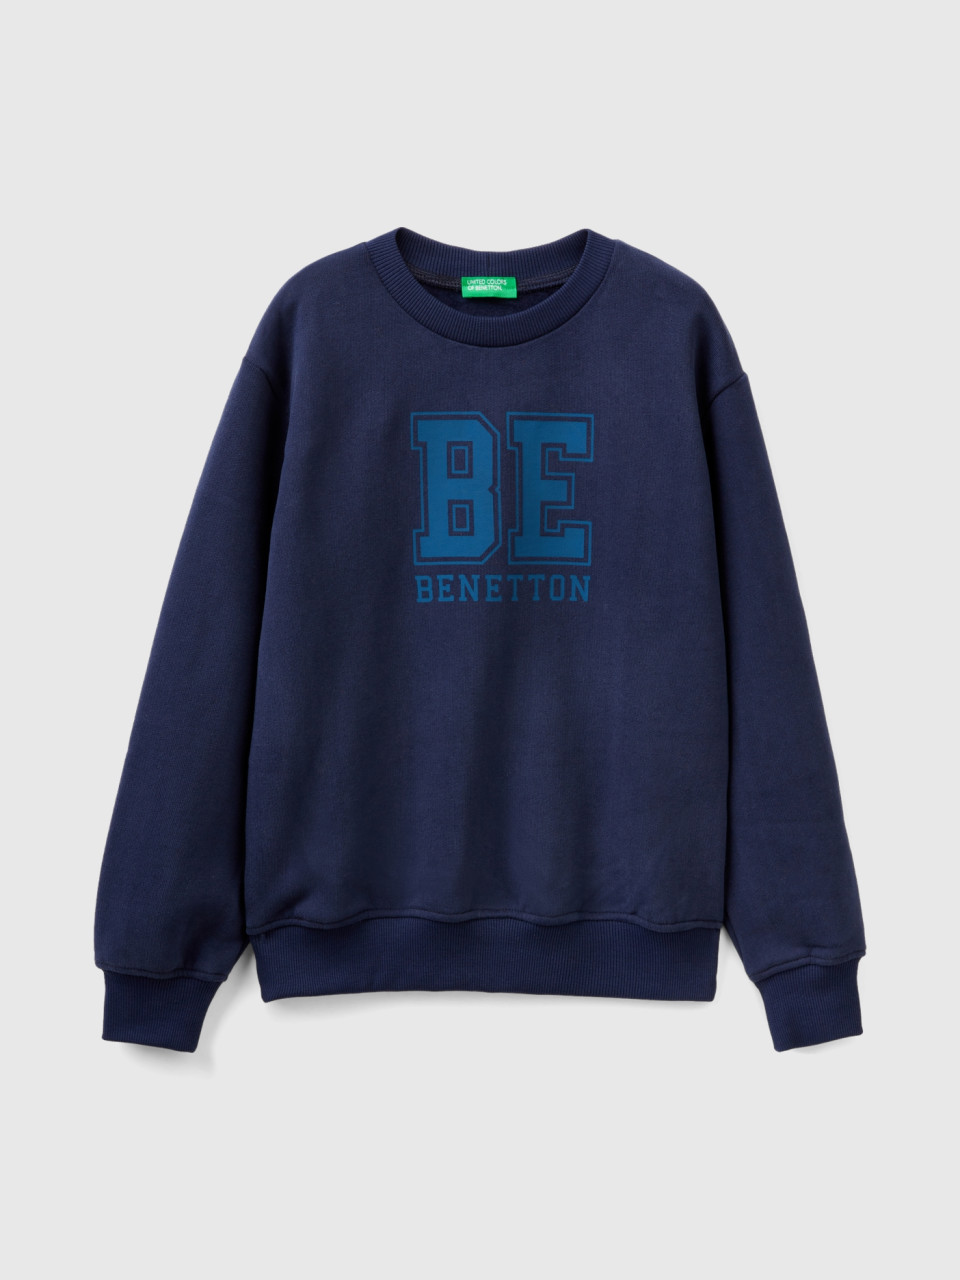 Benetton, Warm Sweatshirt With Logo, Dark Blue, Kids